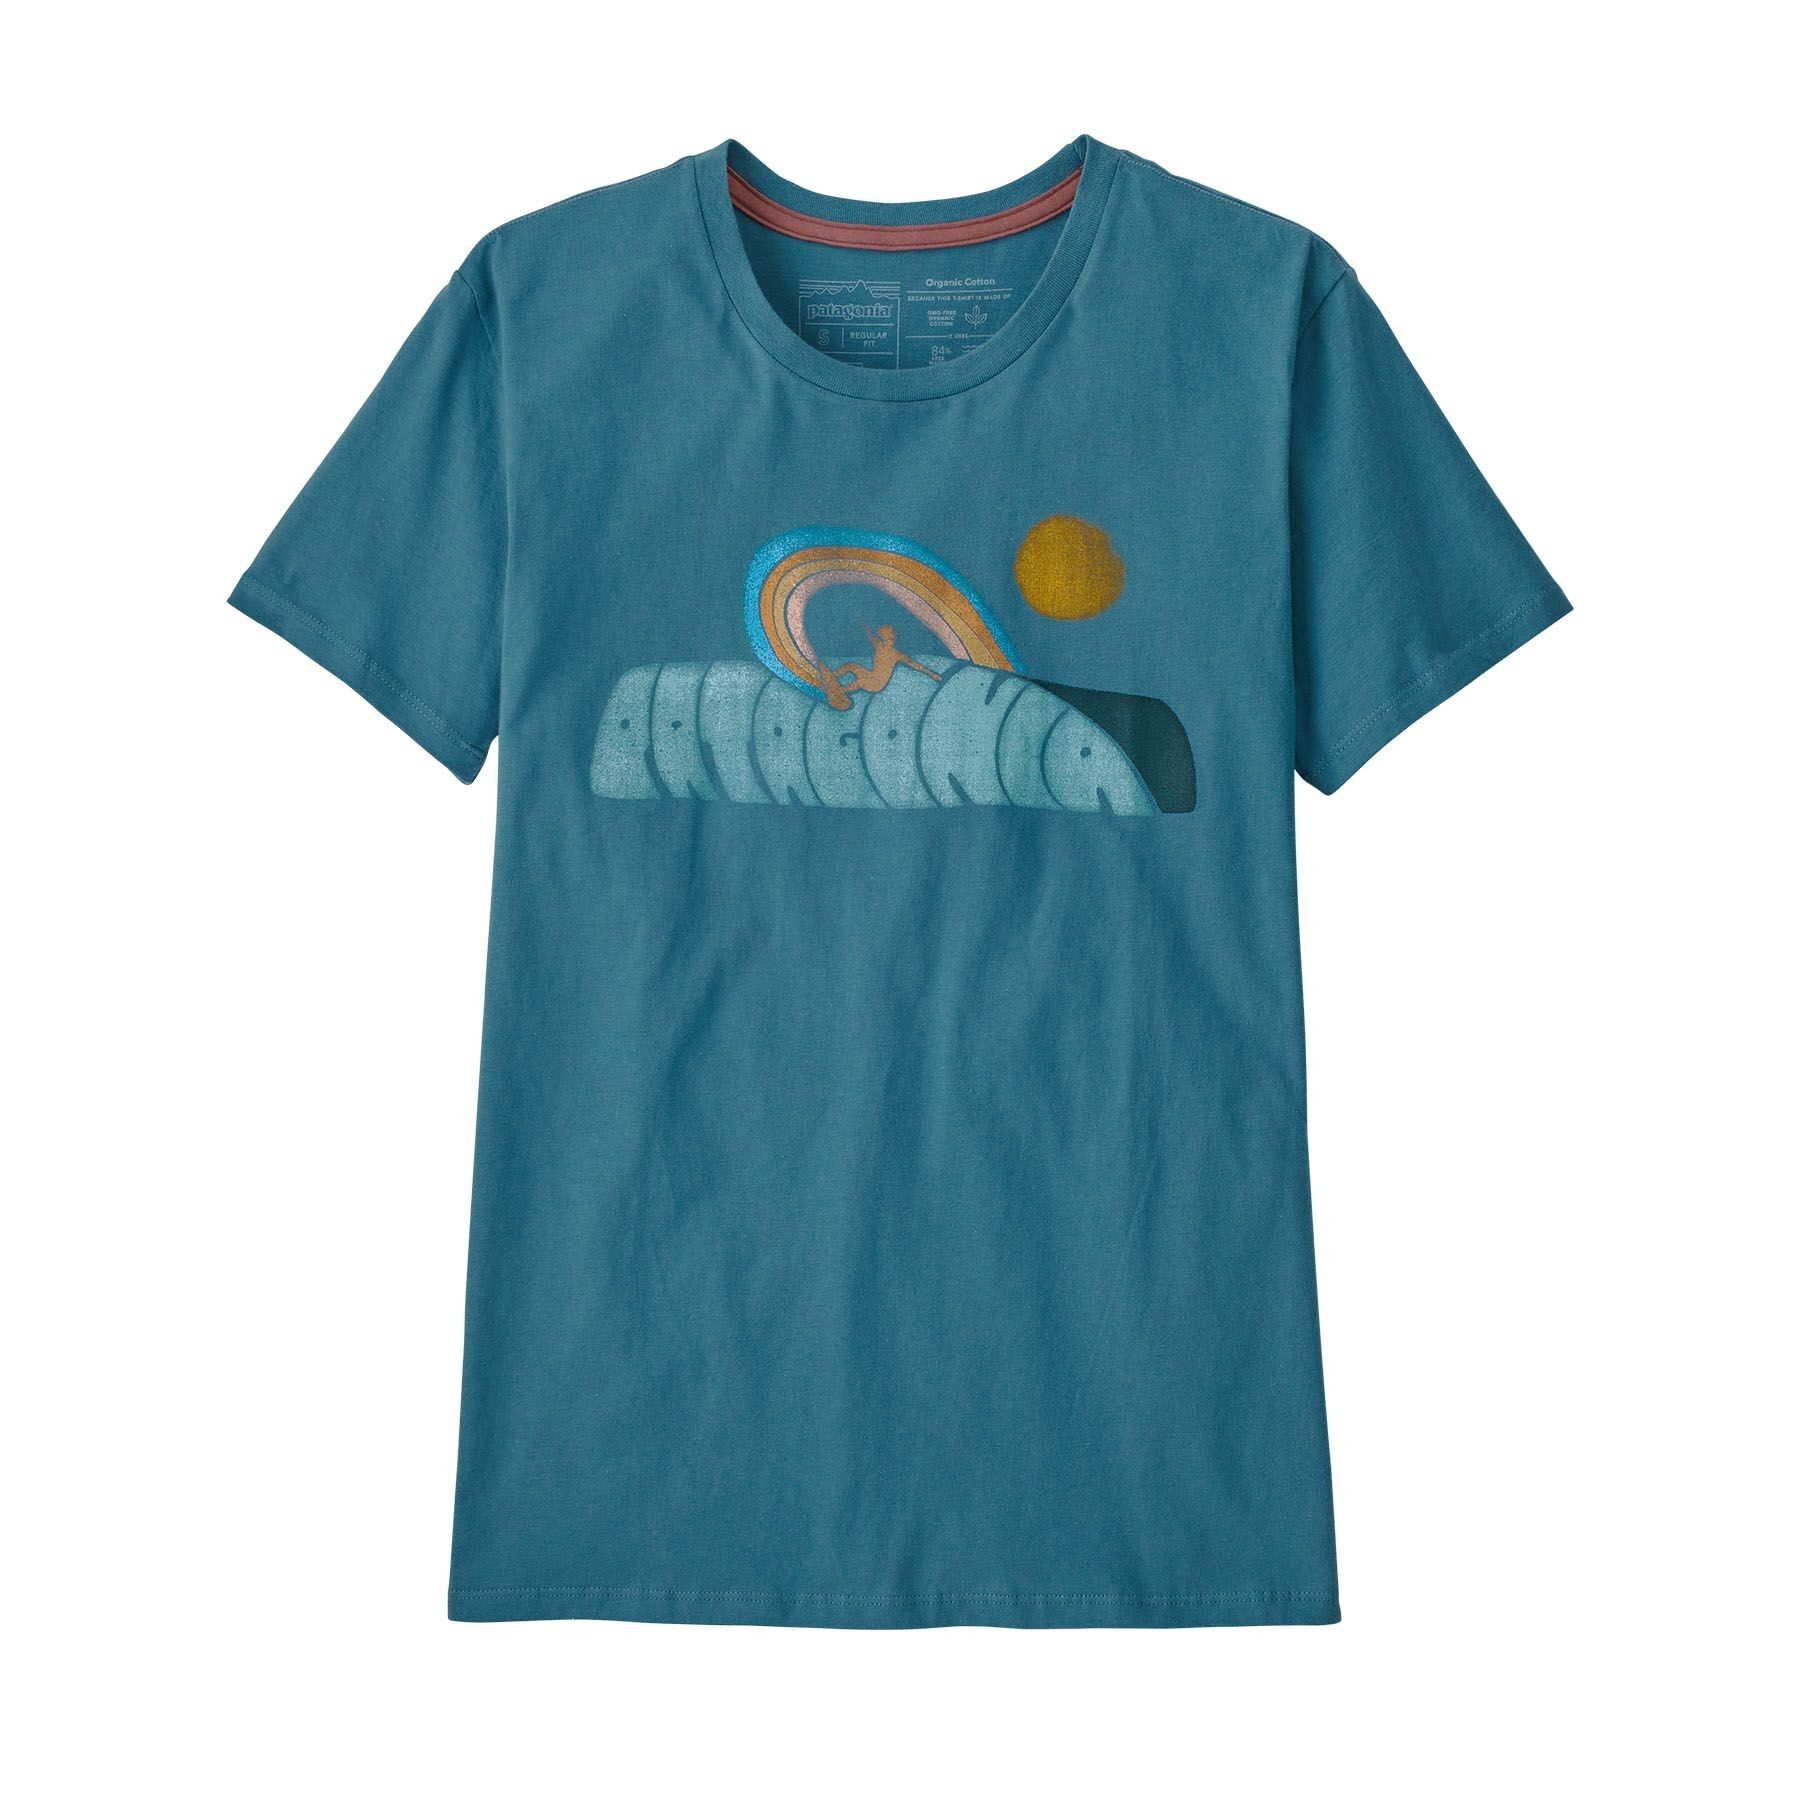 Patagonia Rainbow Rail Organic Crew - T-shirt - Women's